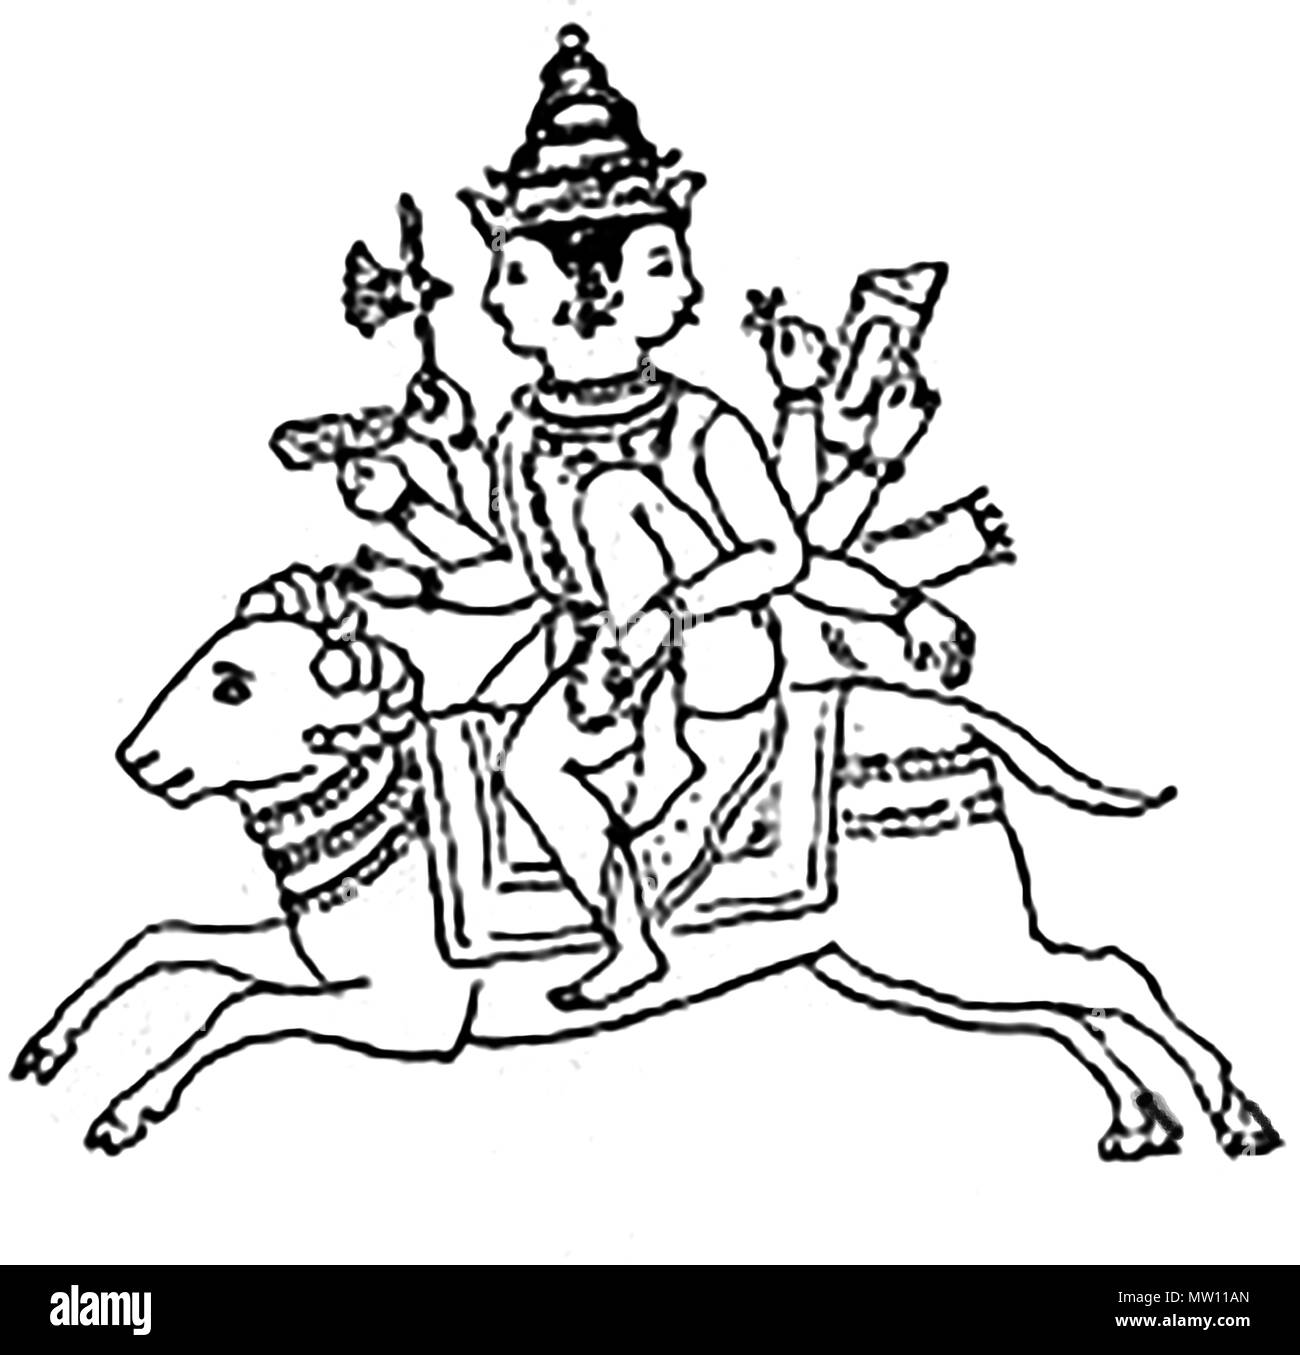 L'Agni, le dieu du feu védique hindoue antique qui est monté sur un vérin Banque D'Images